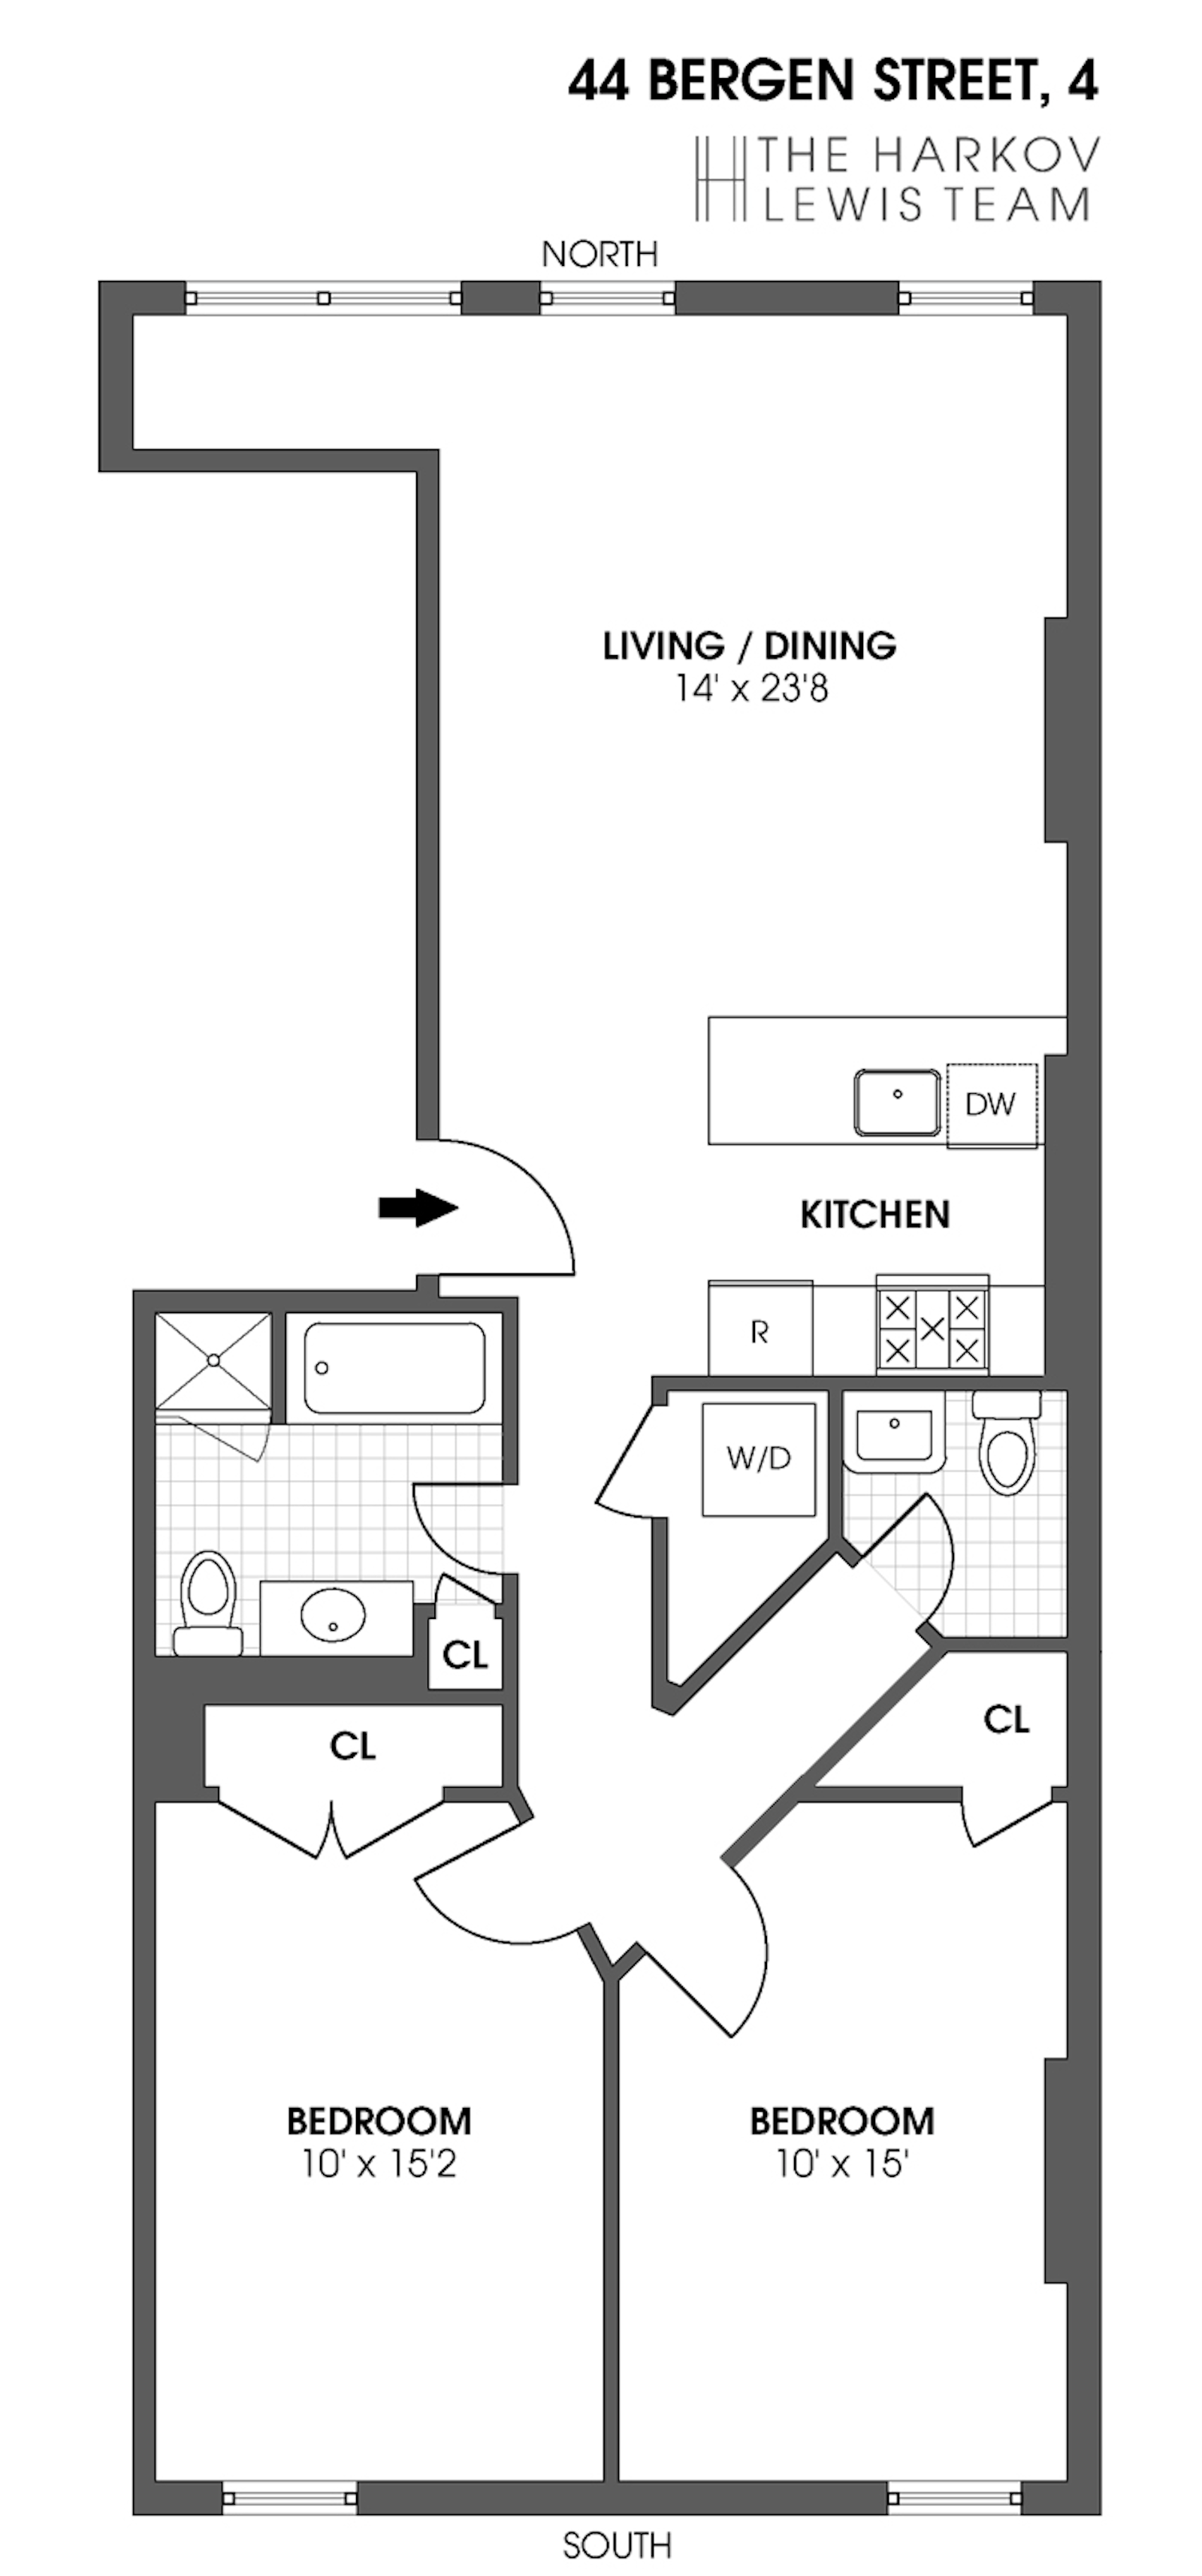 Floorplan for 44 Bergen St, 4